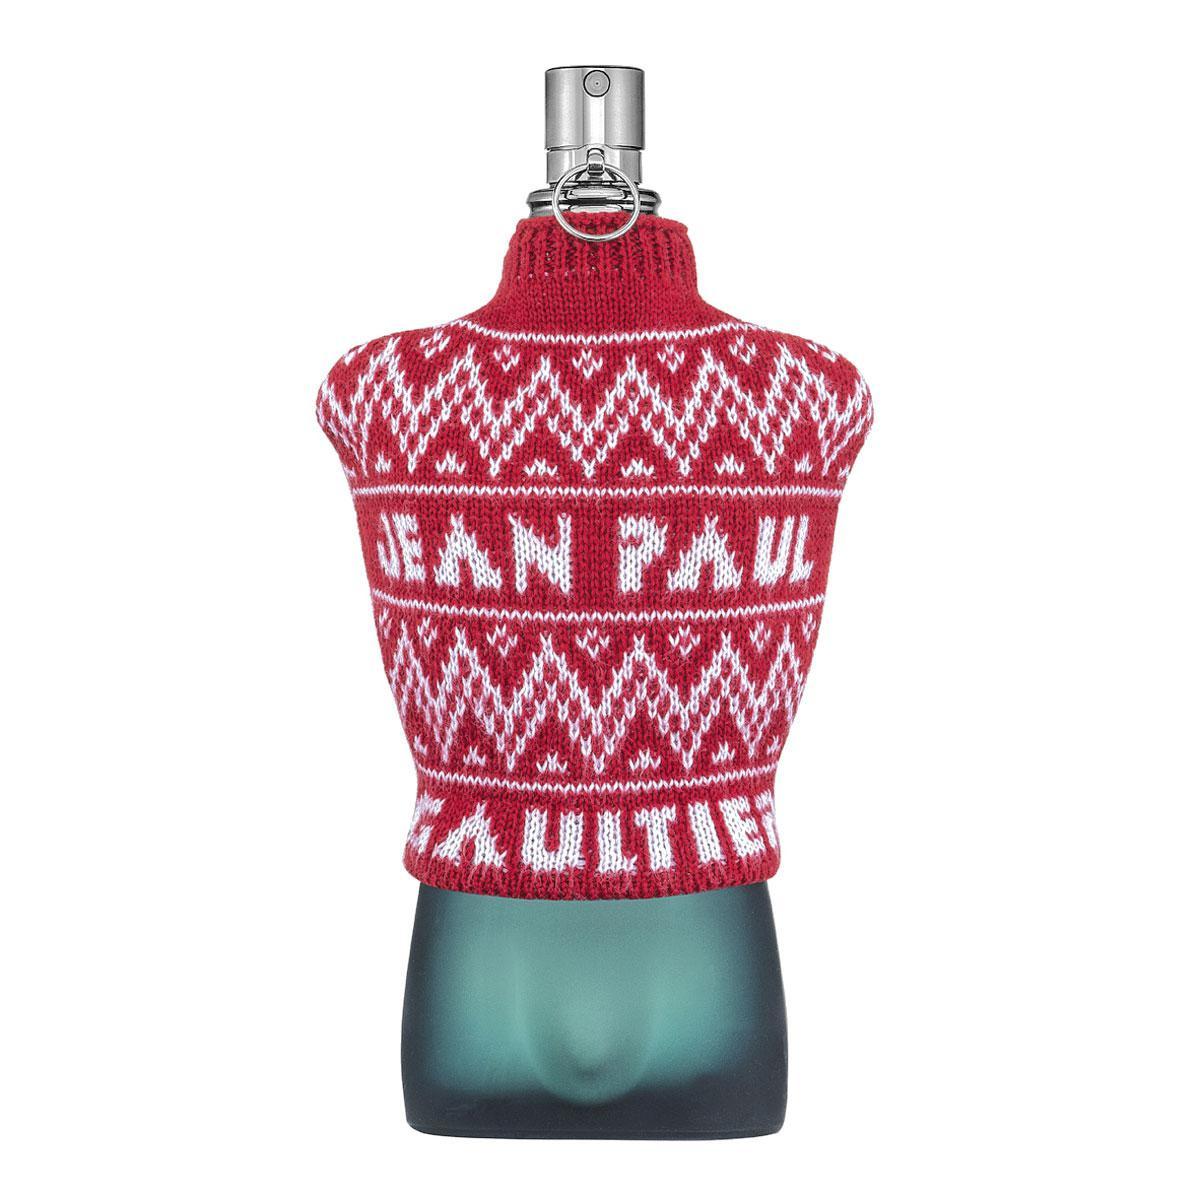 Een klassieke geur met een knipoog naar de kersttrui. Le Mâle Xmas Collector van Jean Paul Gaultier, 100 euro voor 125 ml, beperkte editie, in de parfumerie.